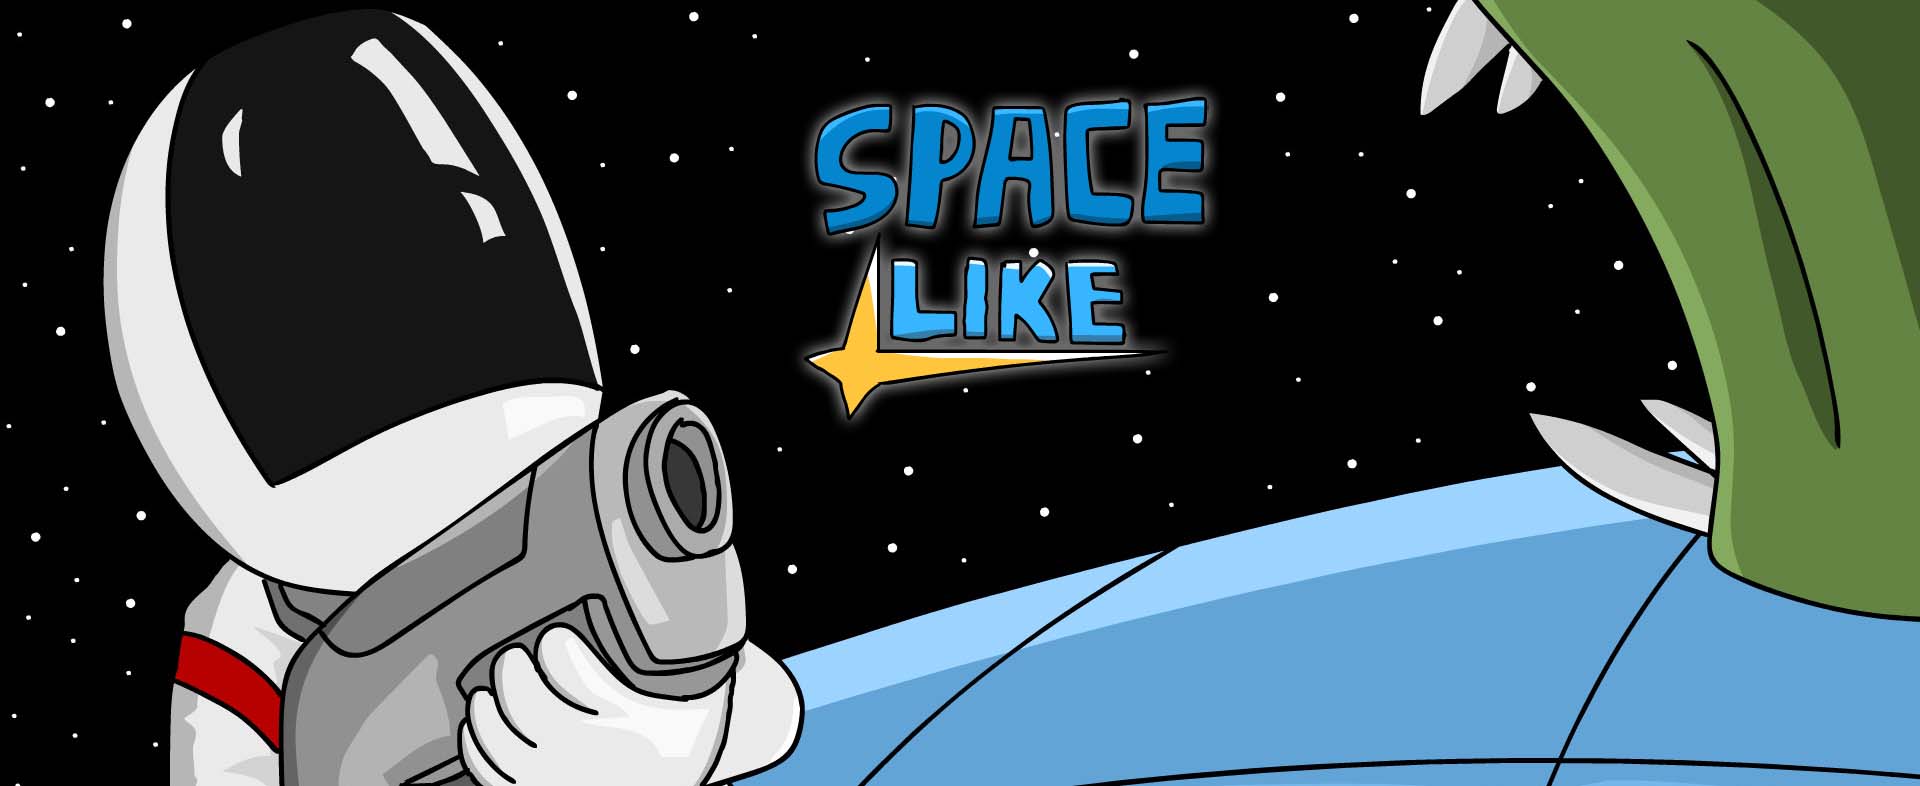 Space like